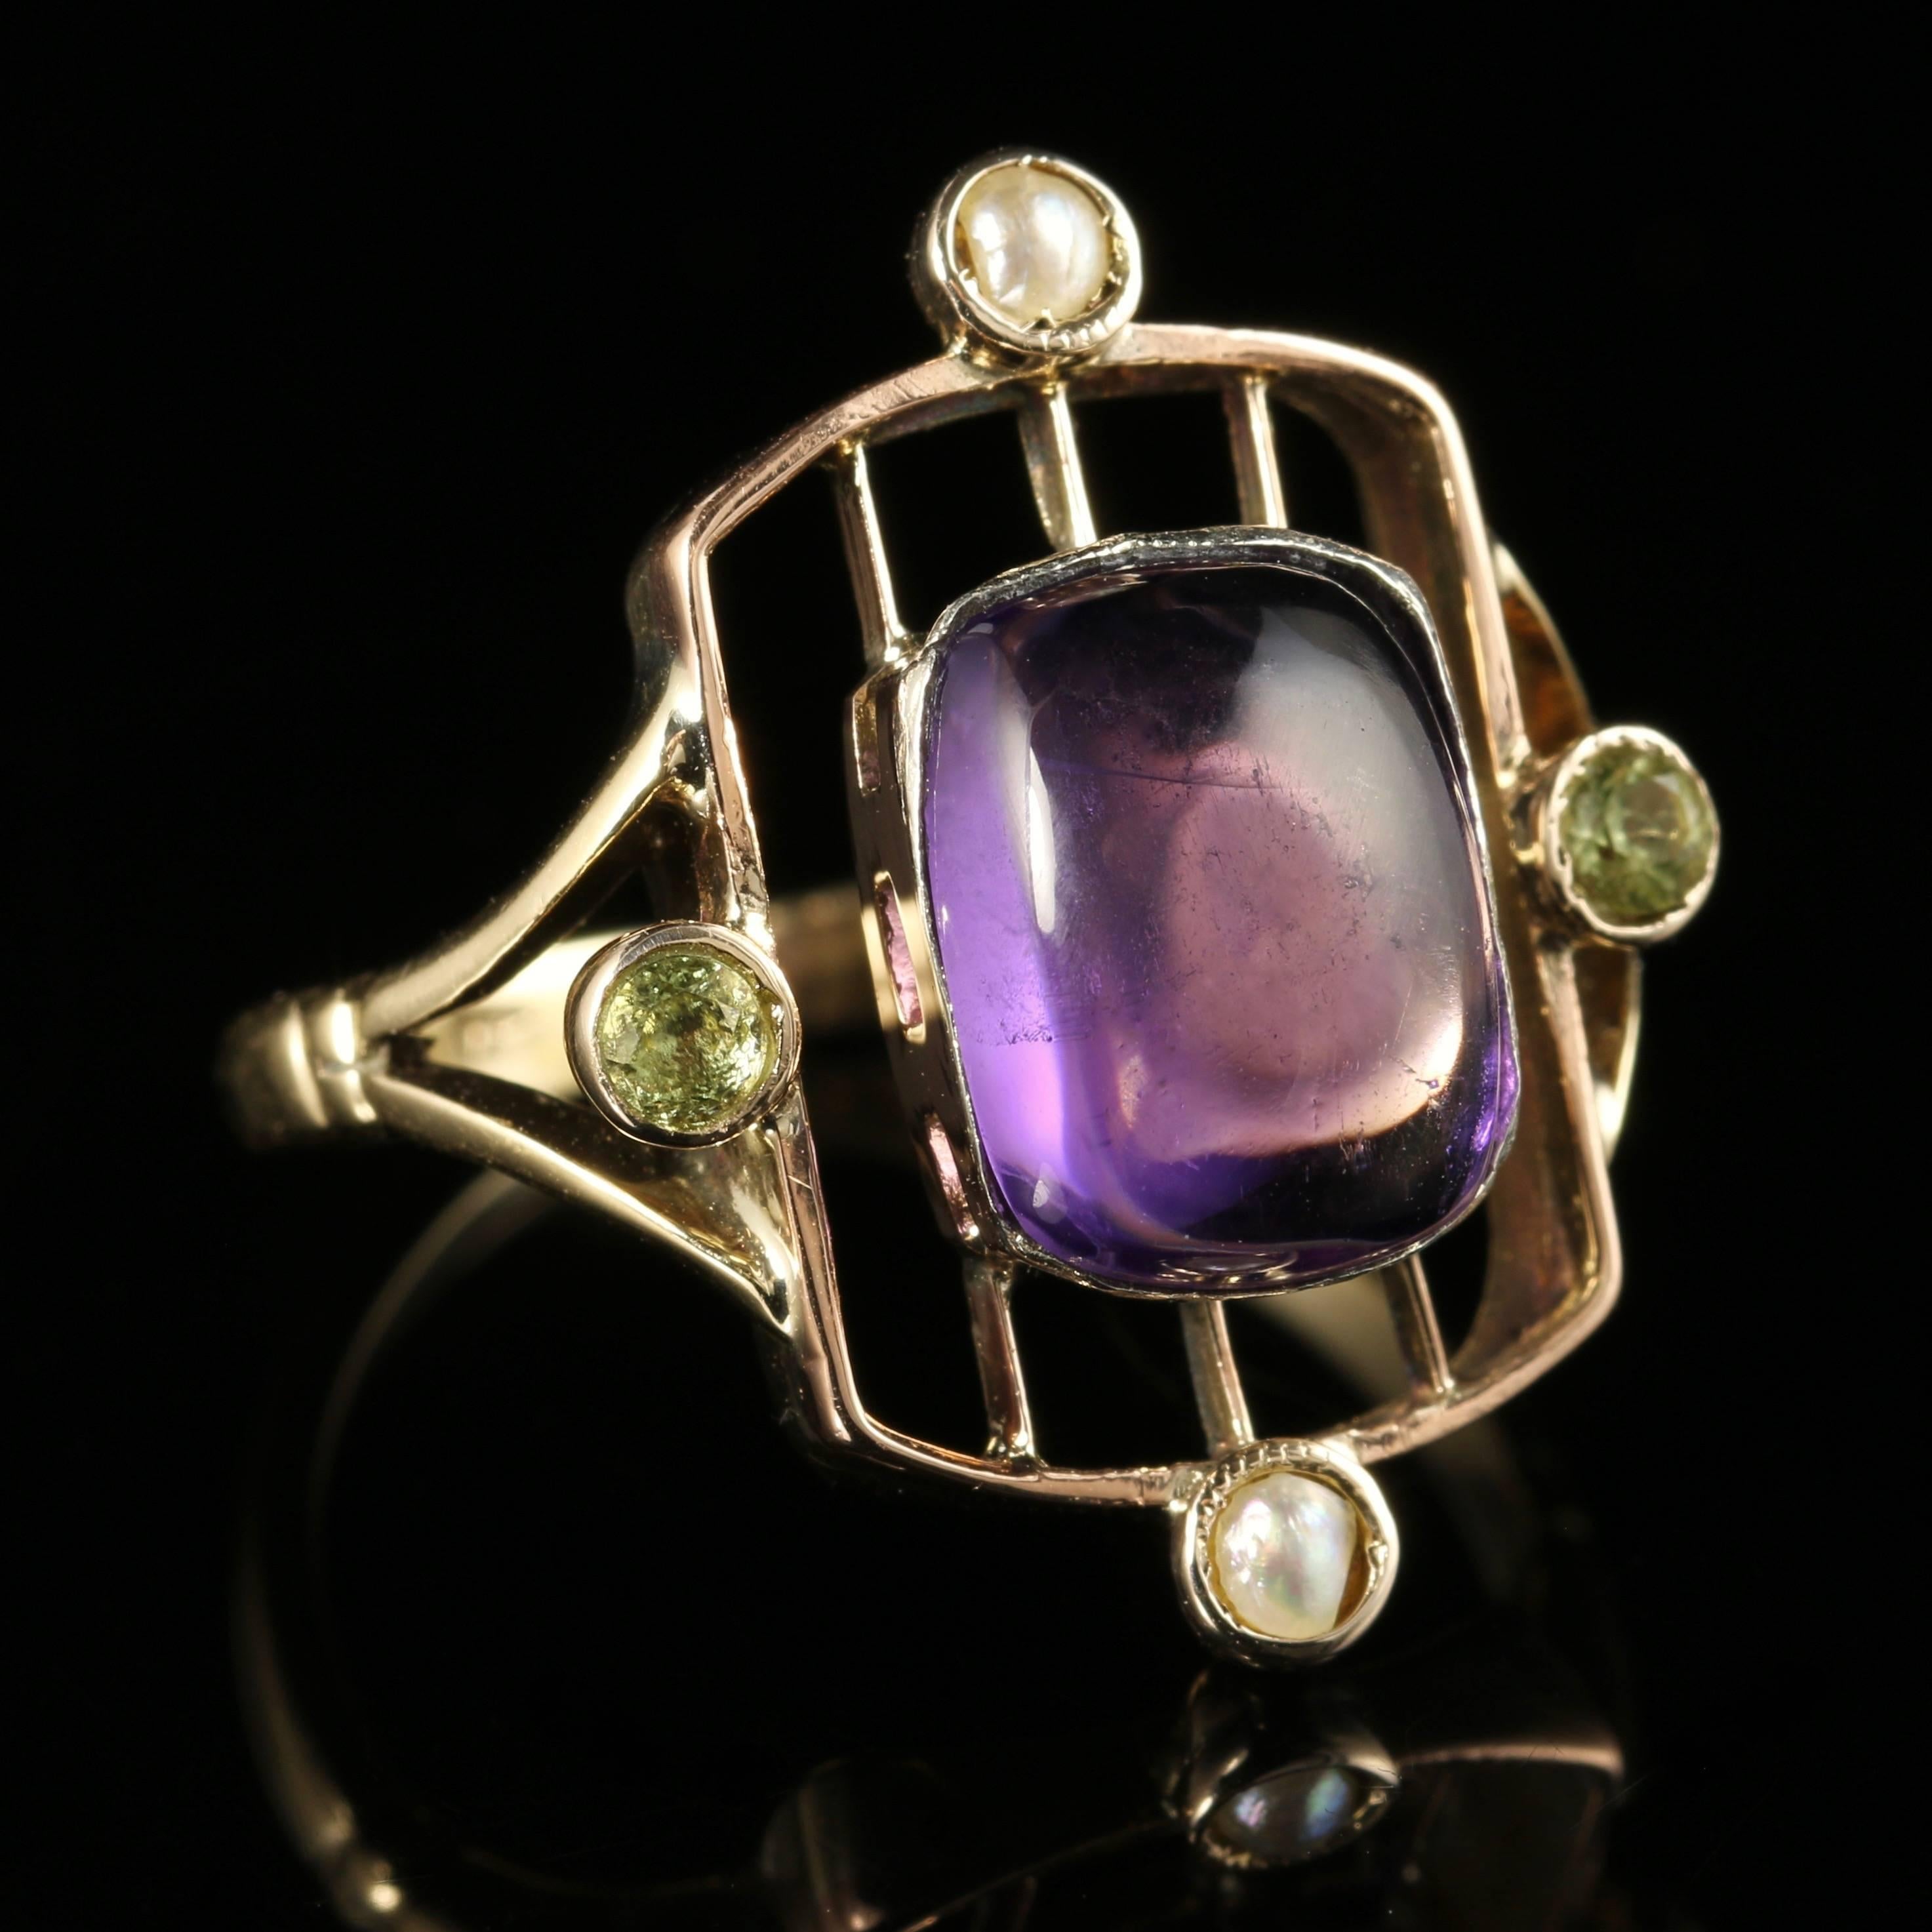 Women's Antique Victorian Suffragette Fancy Work Ring 9 Carat Gold